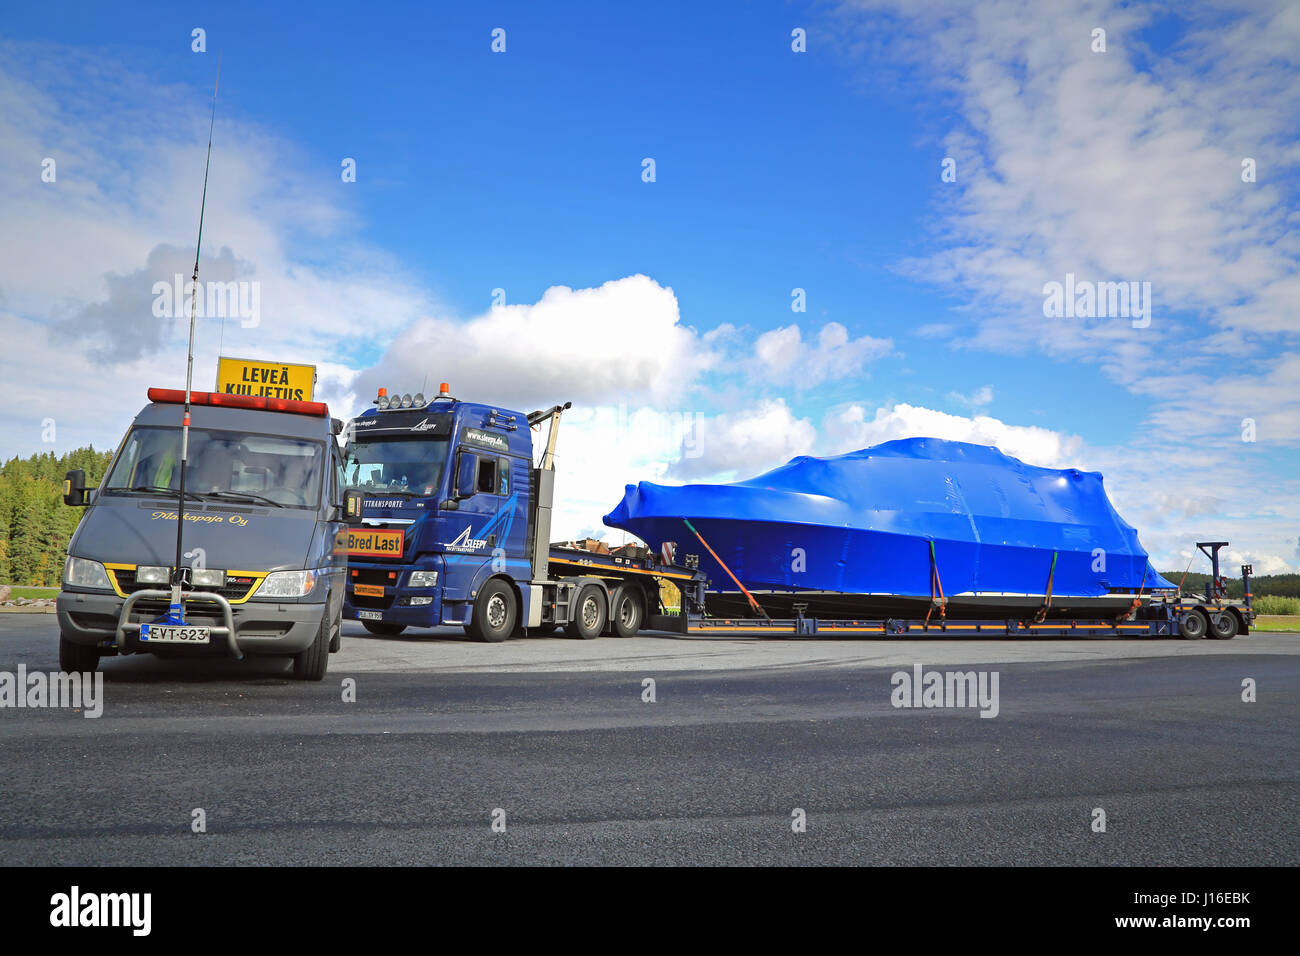 FORSSA, Finlandia - 19 de septiembre de 2015: coche y piloto de carga excepcionales están a punto de salir de una parada de camiones. Un vehículo experimental con la pole es de medición de altura. Foto de stock